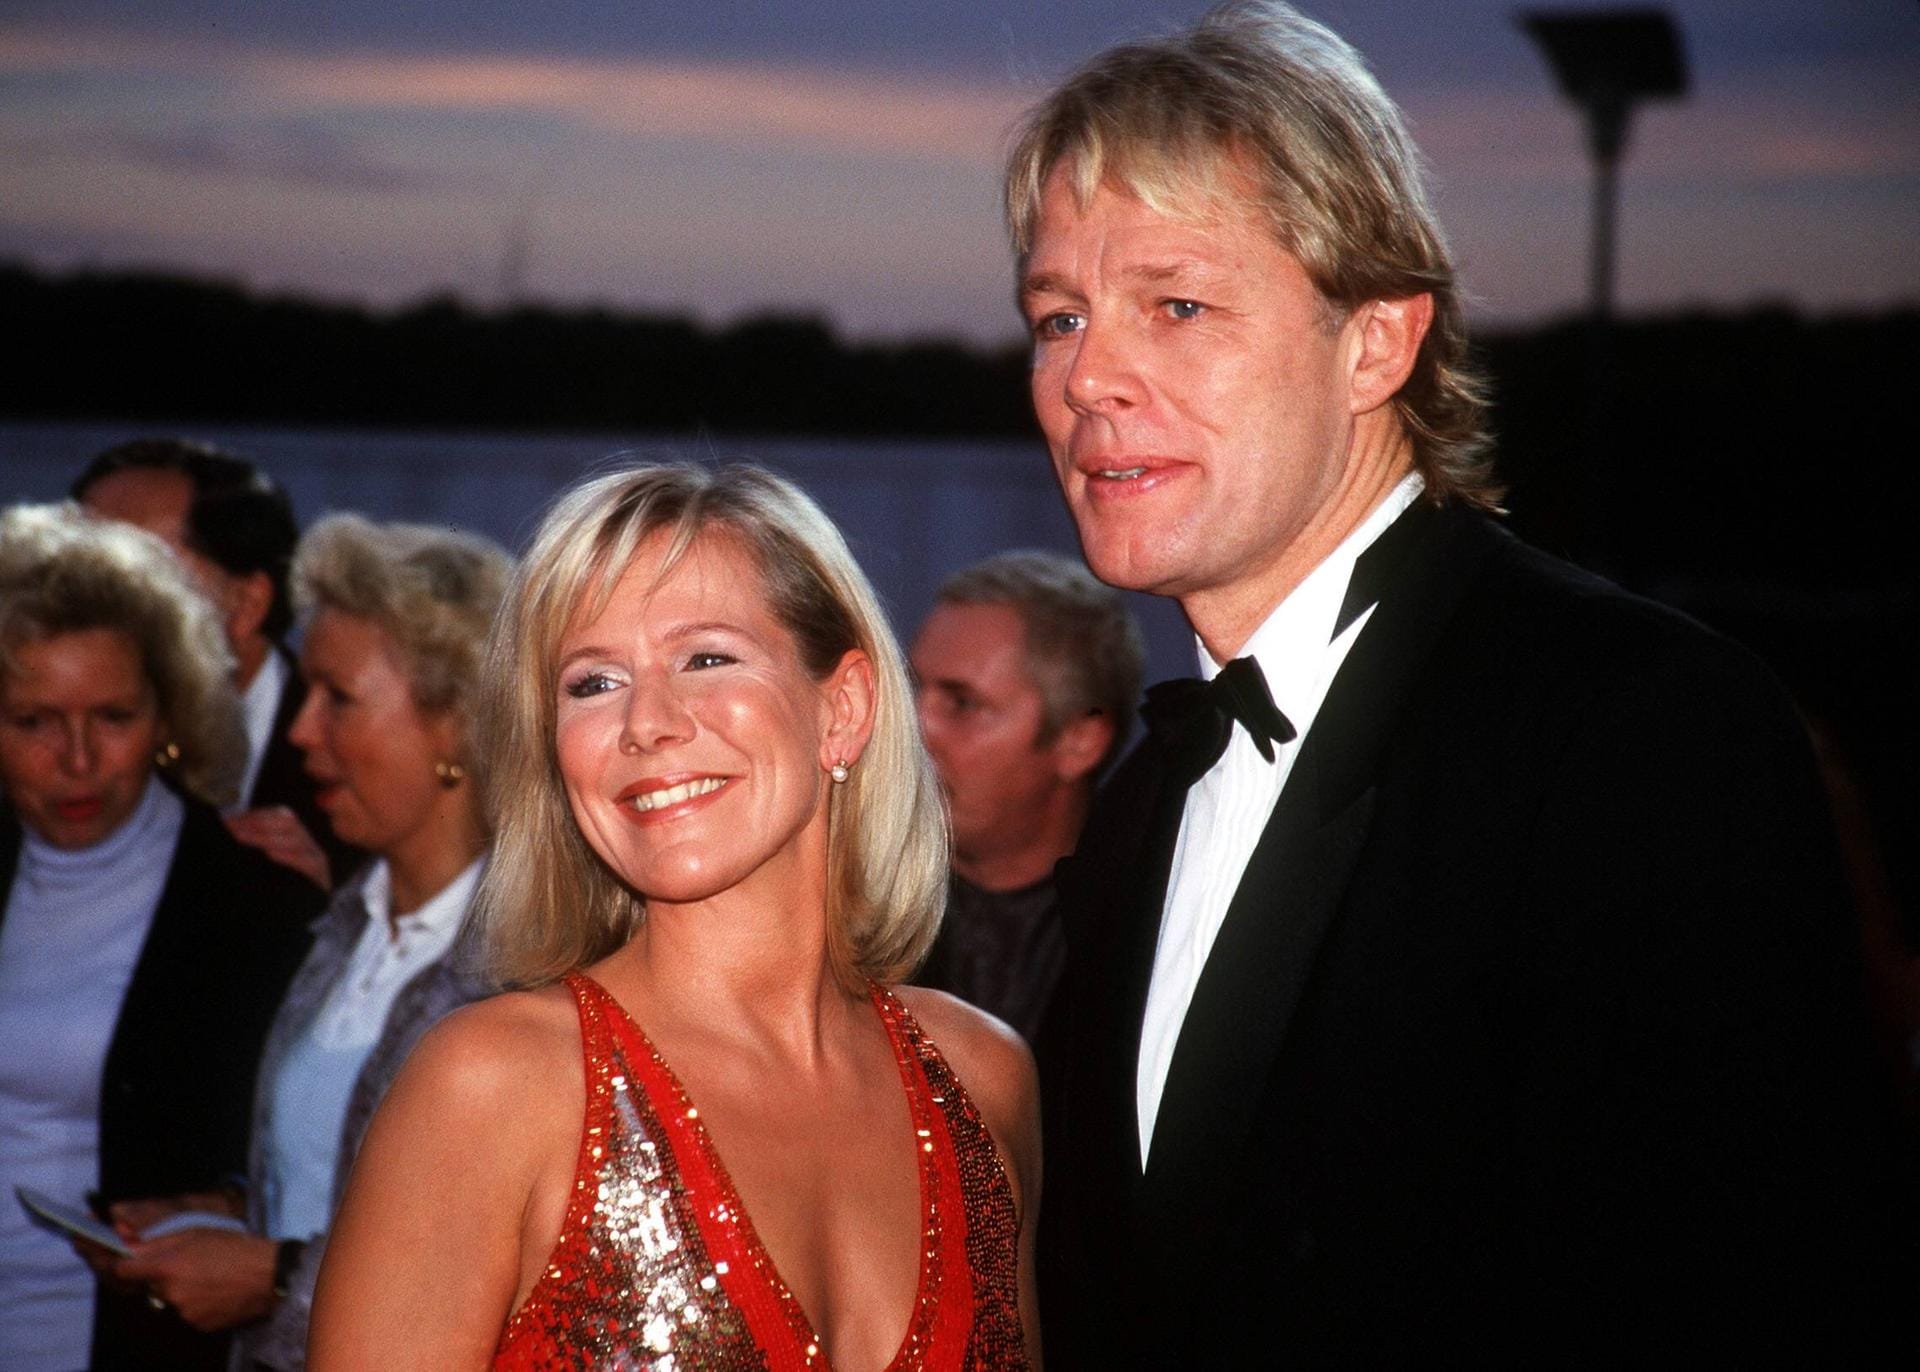 2001: Moderatorin Ulrike von der Groeben besucht mit ihrem Mann Alexander von der Groeben die Verleihung des Deutschen Fernsehpreises in Köln.